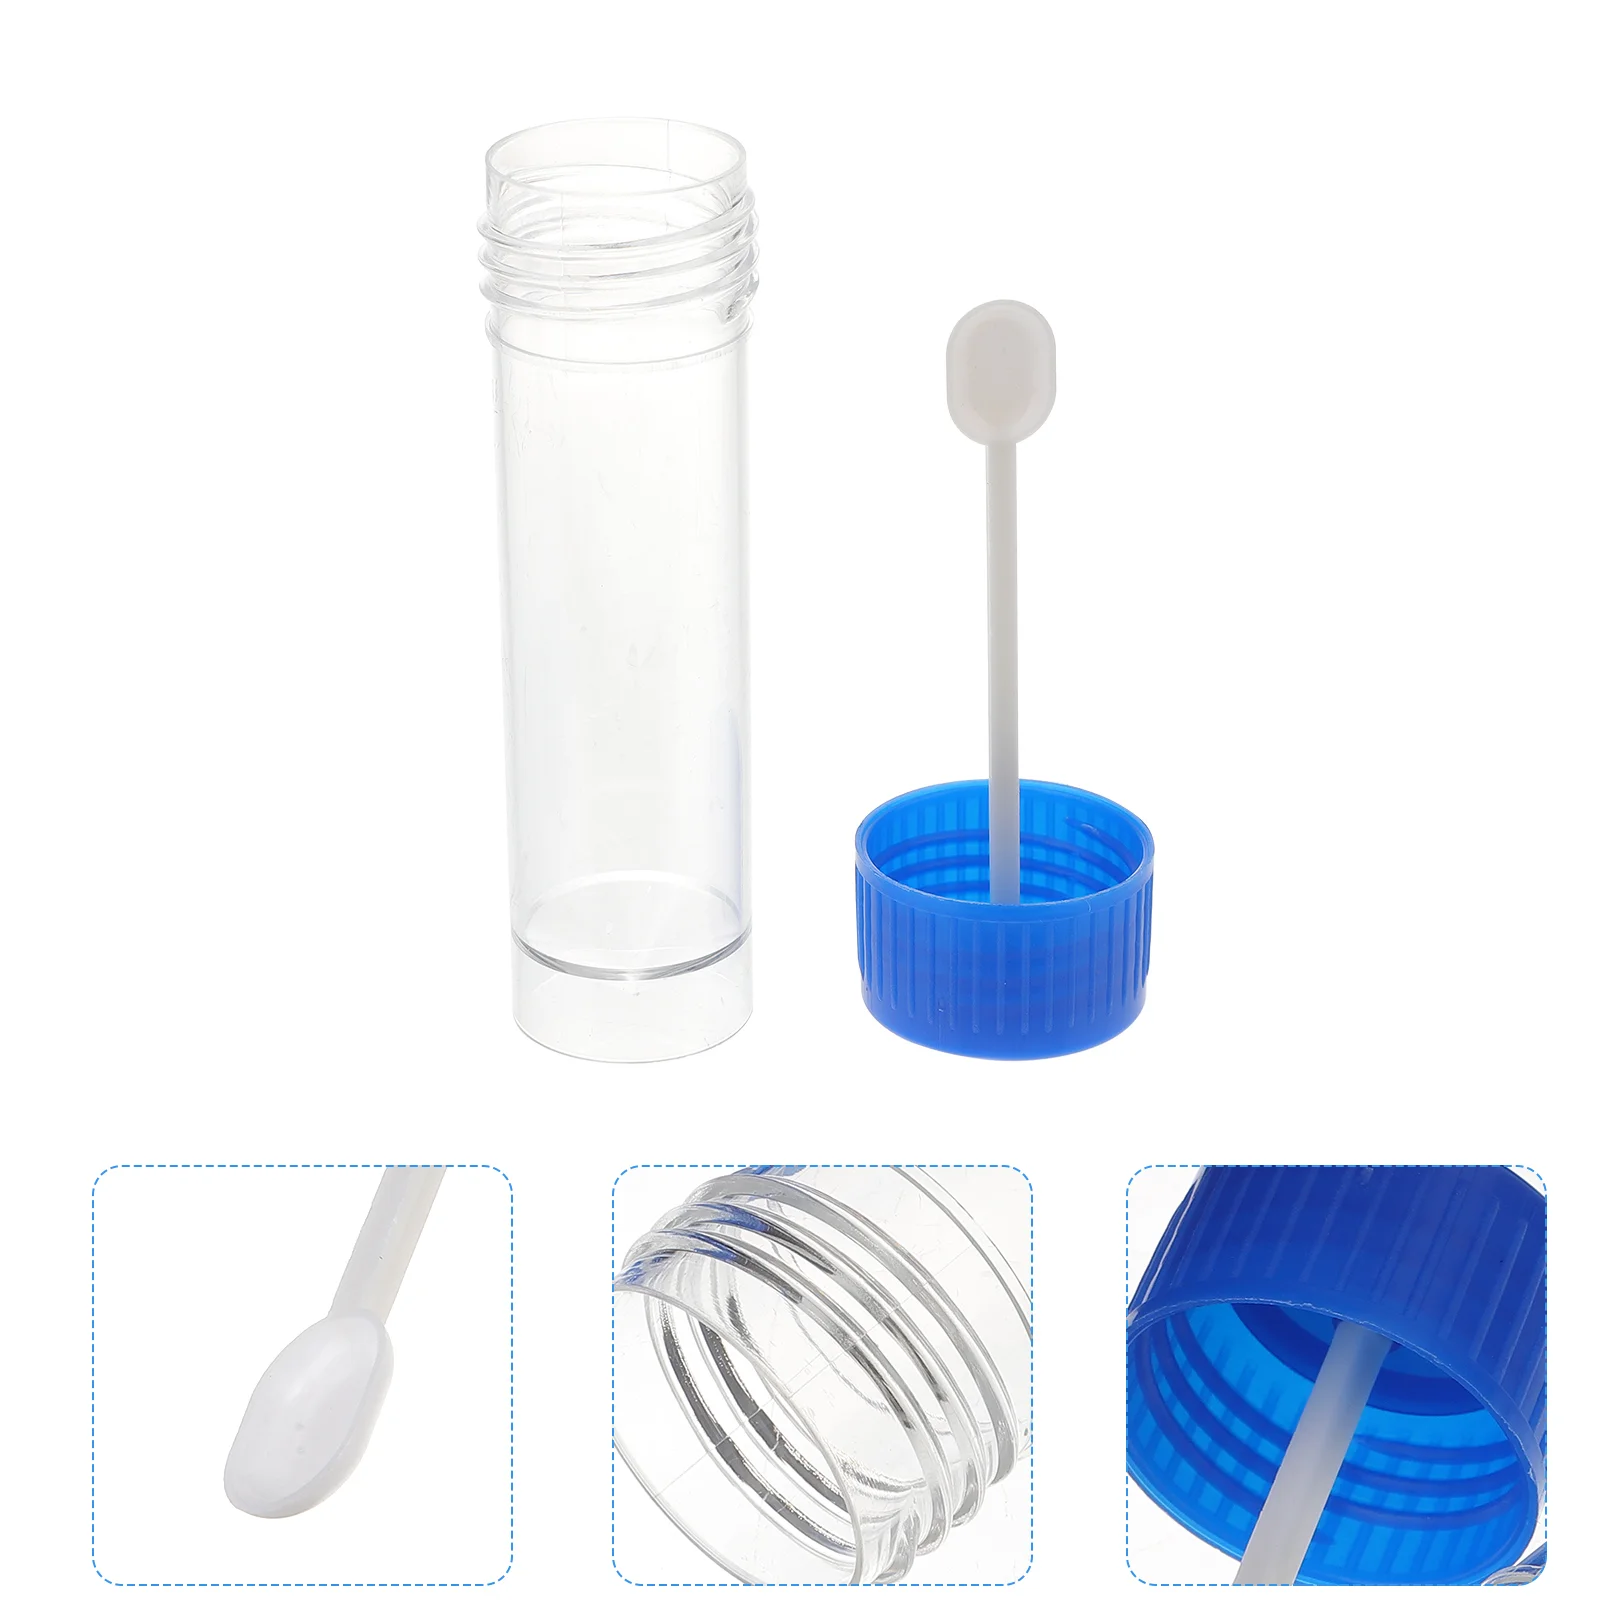 Пластиковая крышка для стакана для образцов, Пластиковый стаканчик для мочи, контейнер для стула, Контейнеры для сбора фекалий без этикетки, Лабораторное медицинское использование